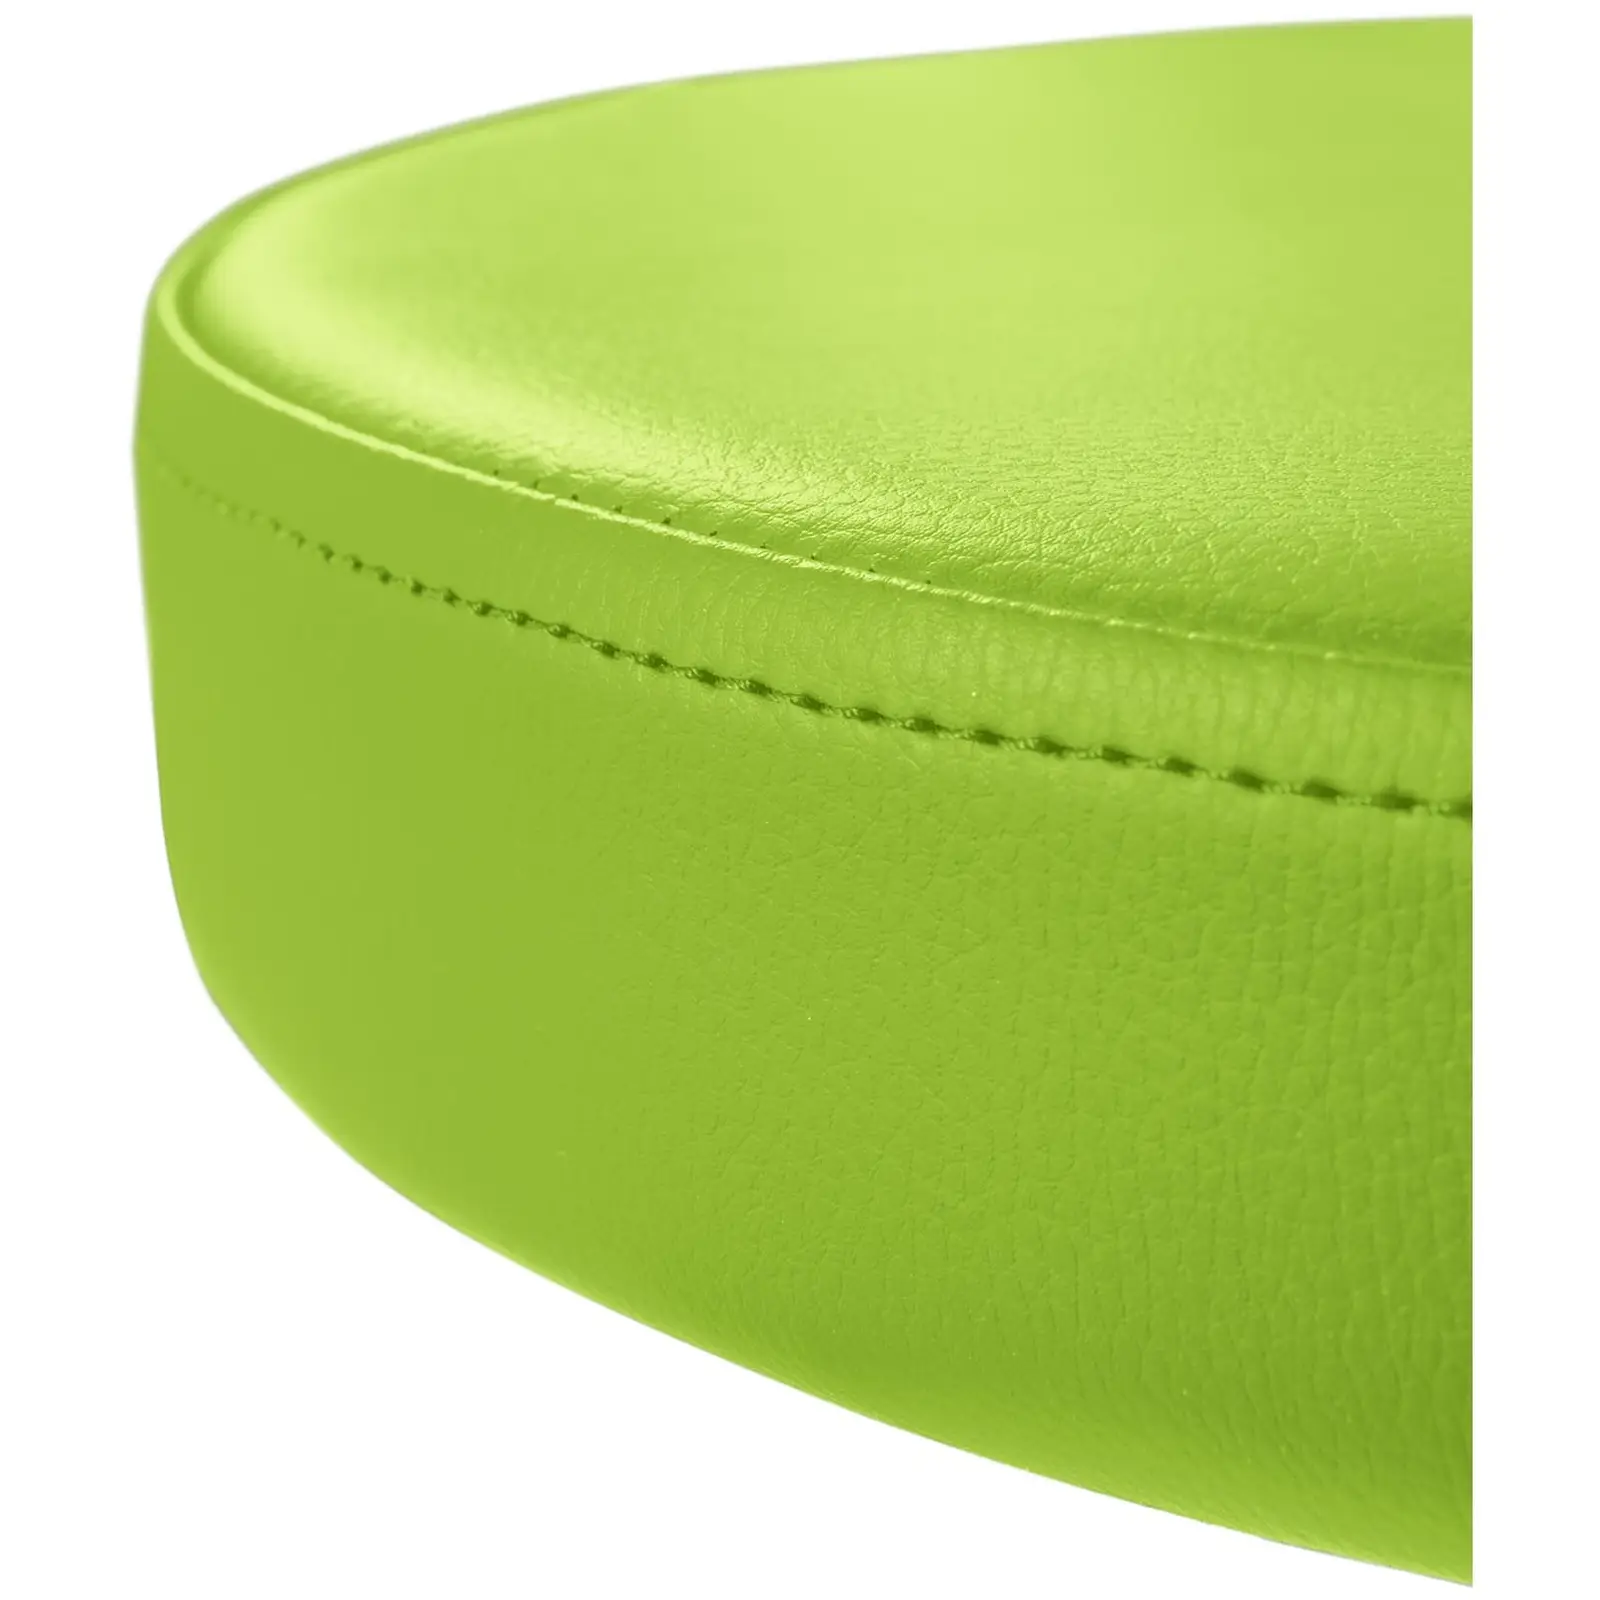 Cadeira de estética - 445 - 580 mm - 150 kg - Verde